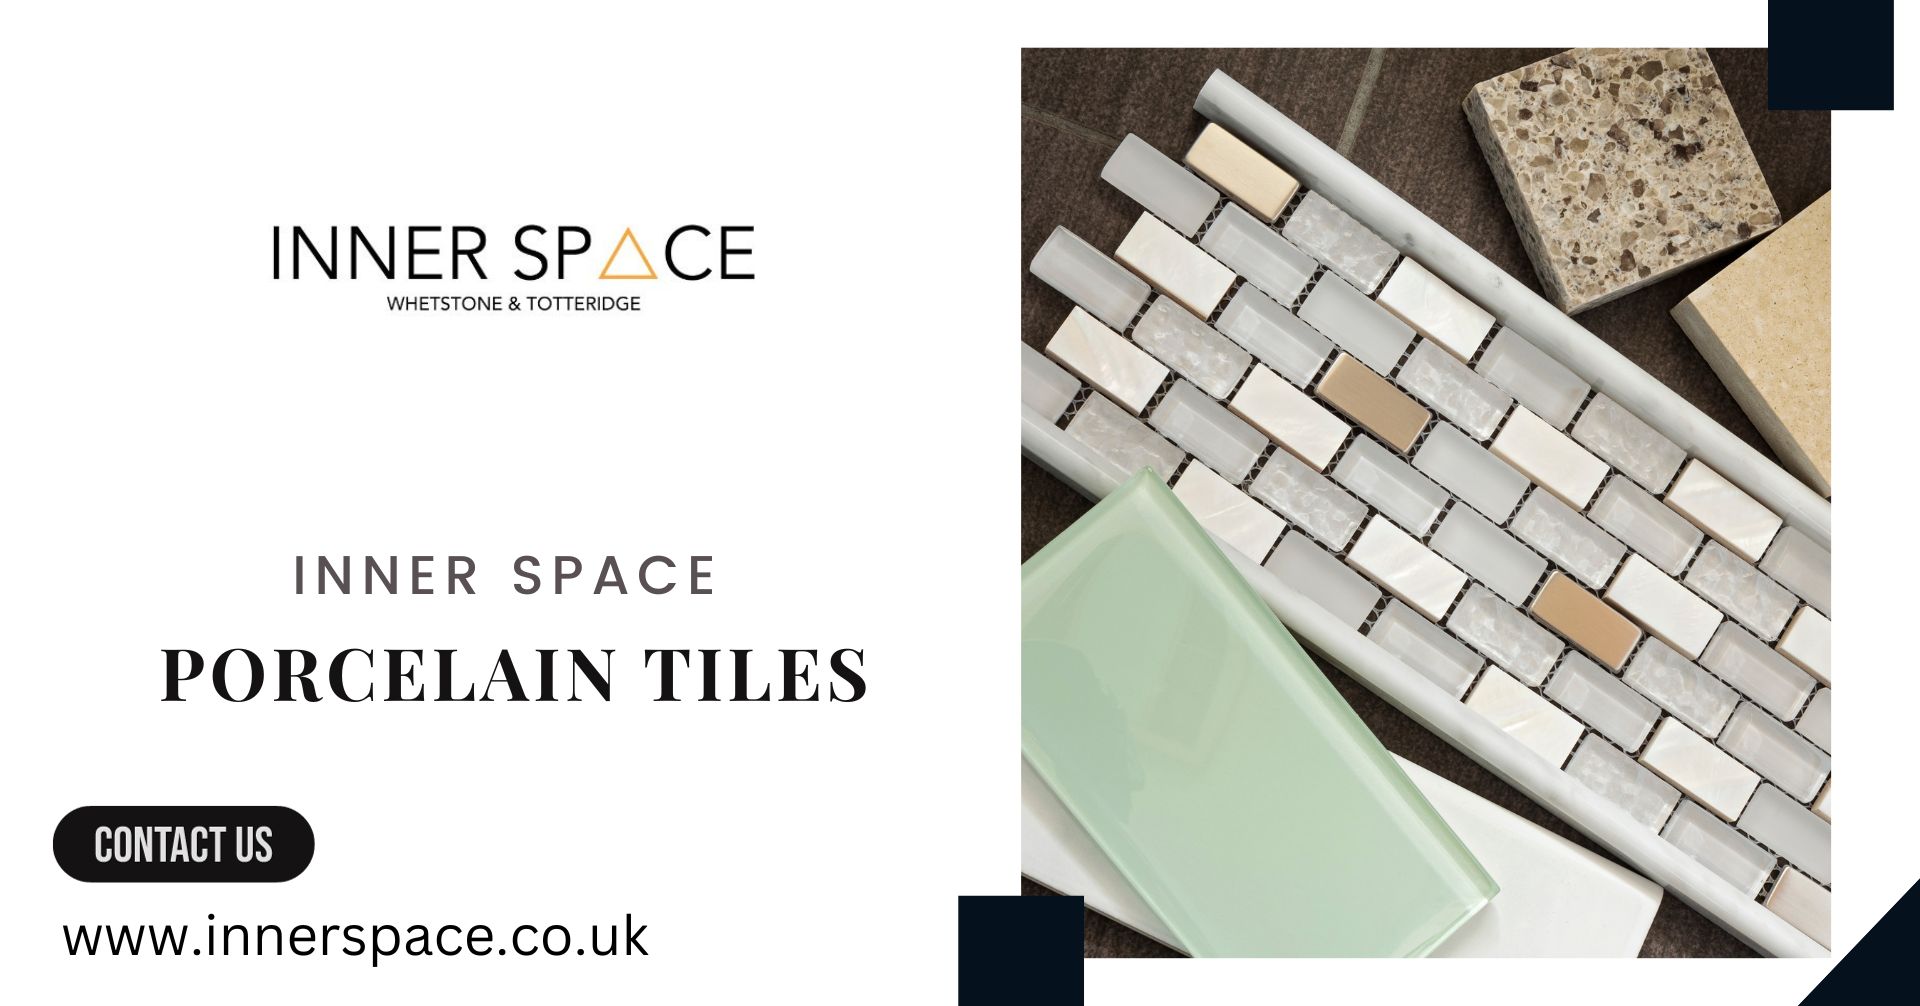 Porcelain tiles: let’s embrace your interior decor